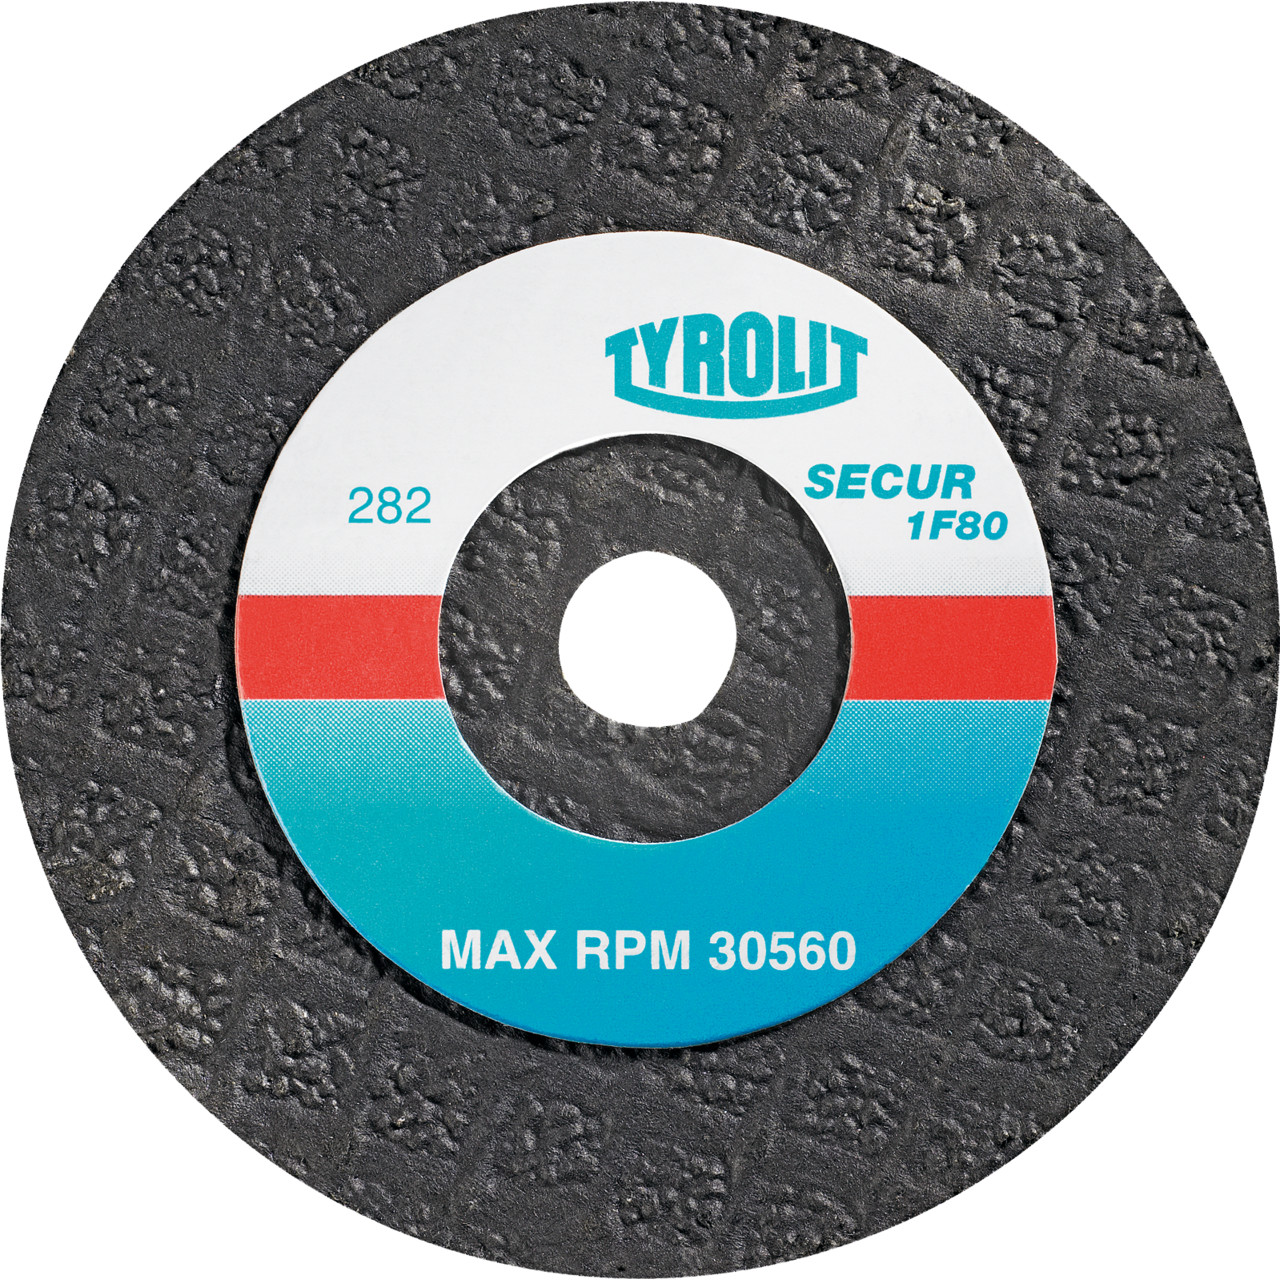 TYROLIT Disques abrasifs DxTxH 50x19x10 1F80 pour acier inoxydable, forme : 1F80 - exécution droite (disque à ébarber), Art. 441245